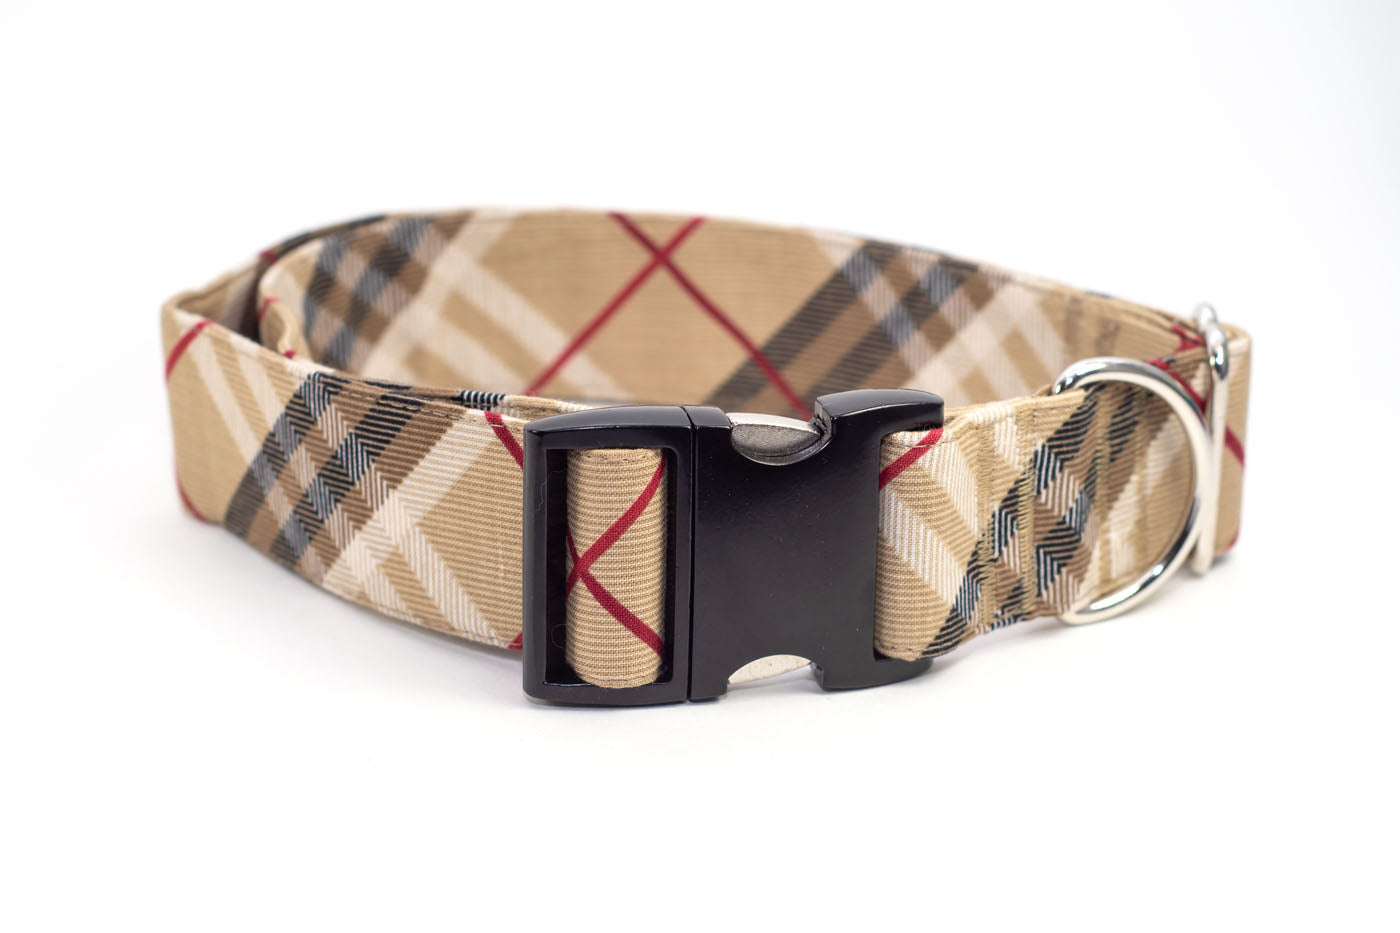 Burberry dog collar  Designer dog collars, Burberry dog collar, Cute dog  collars